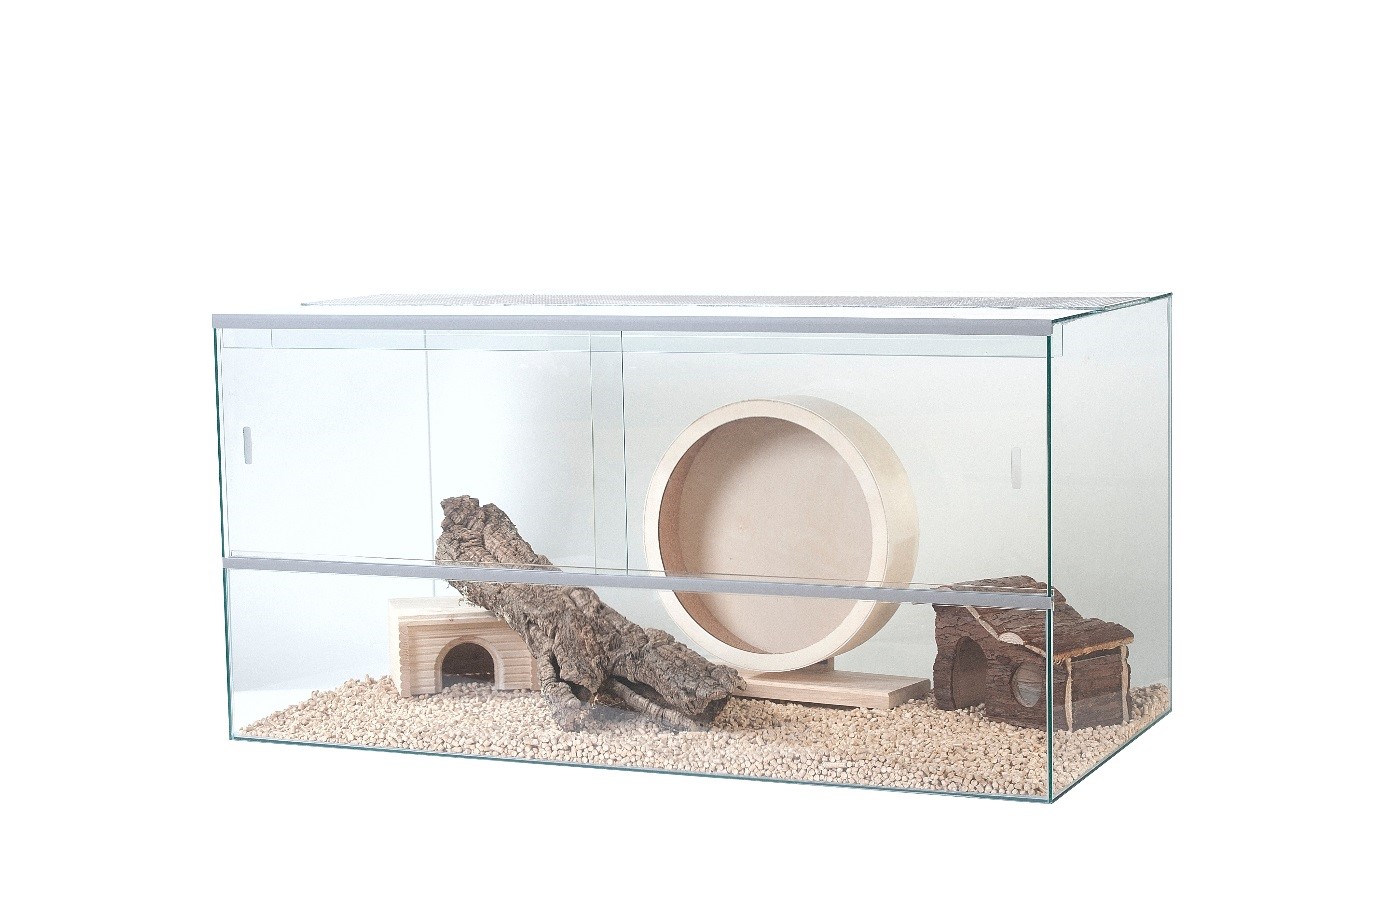 Rodent terrarium